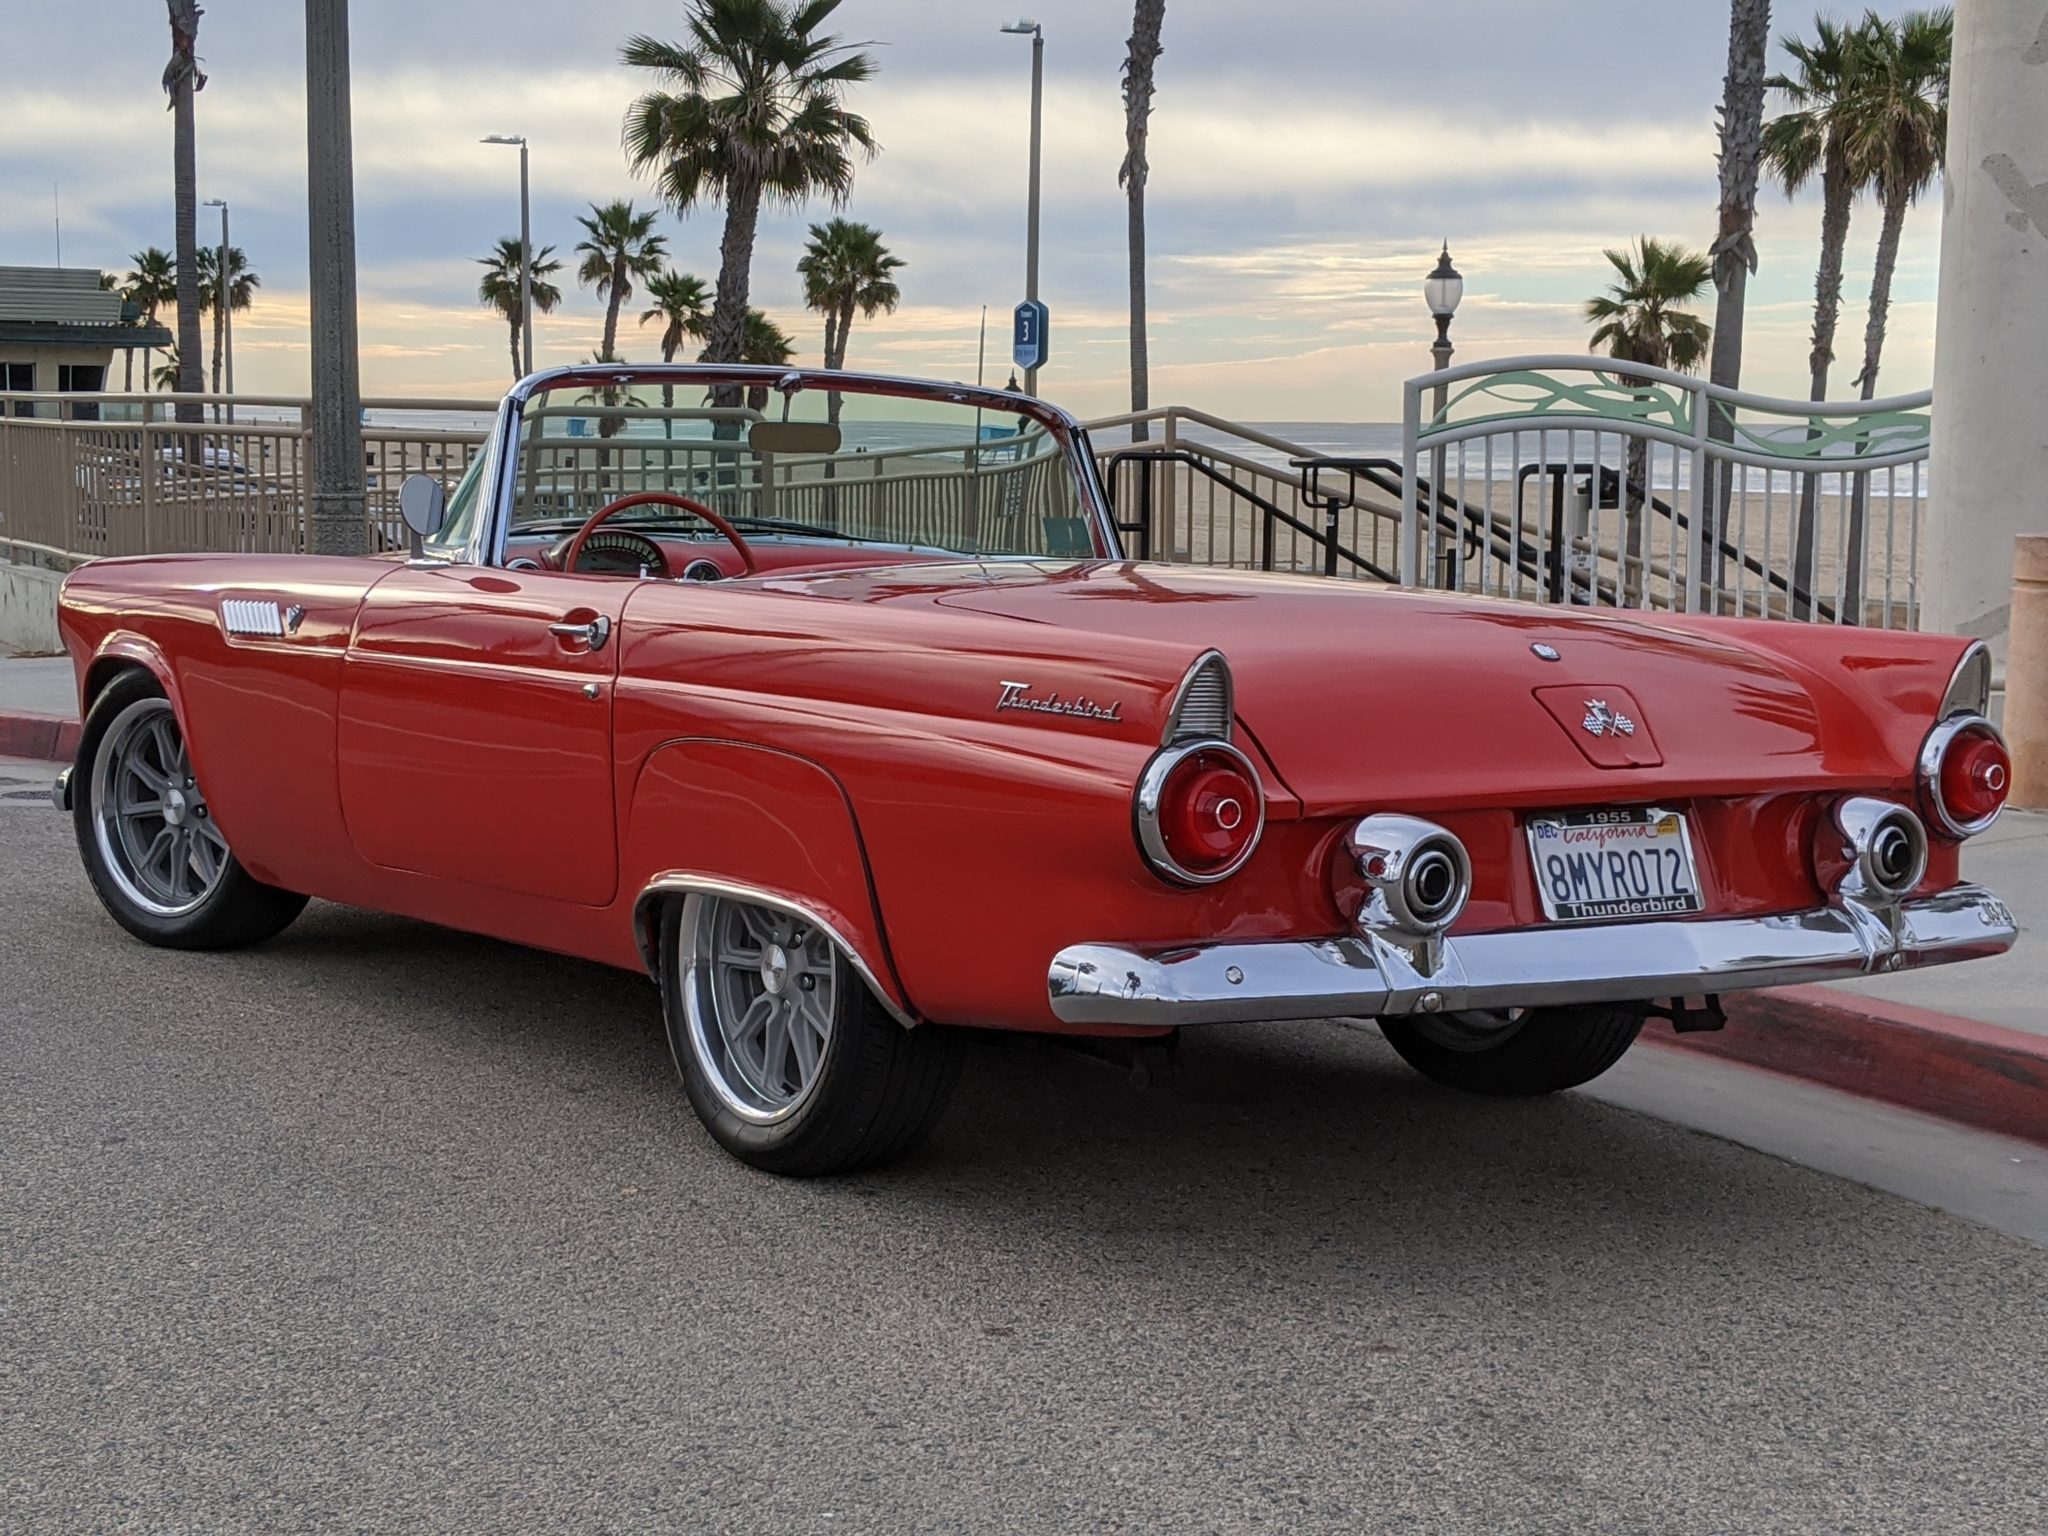 1955 Ford Thunderbird at the Beach